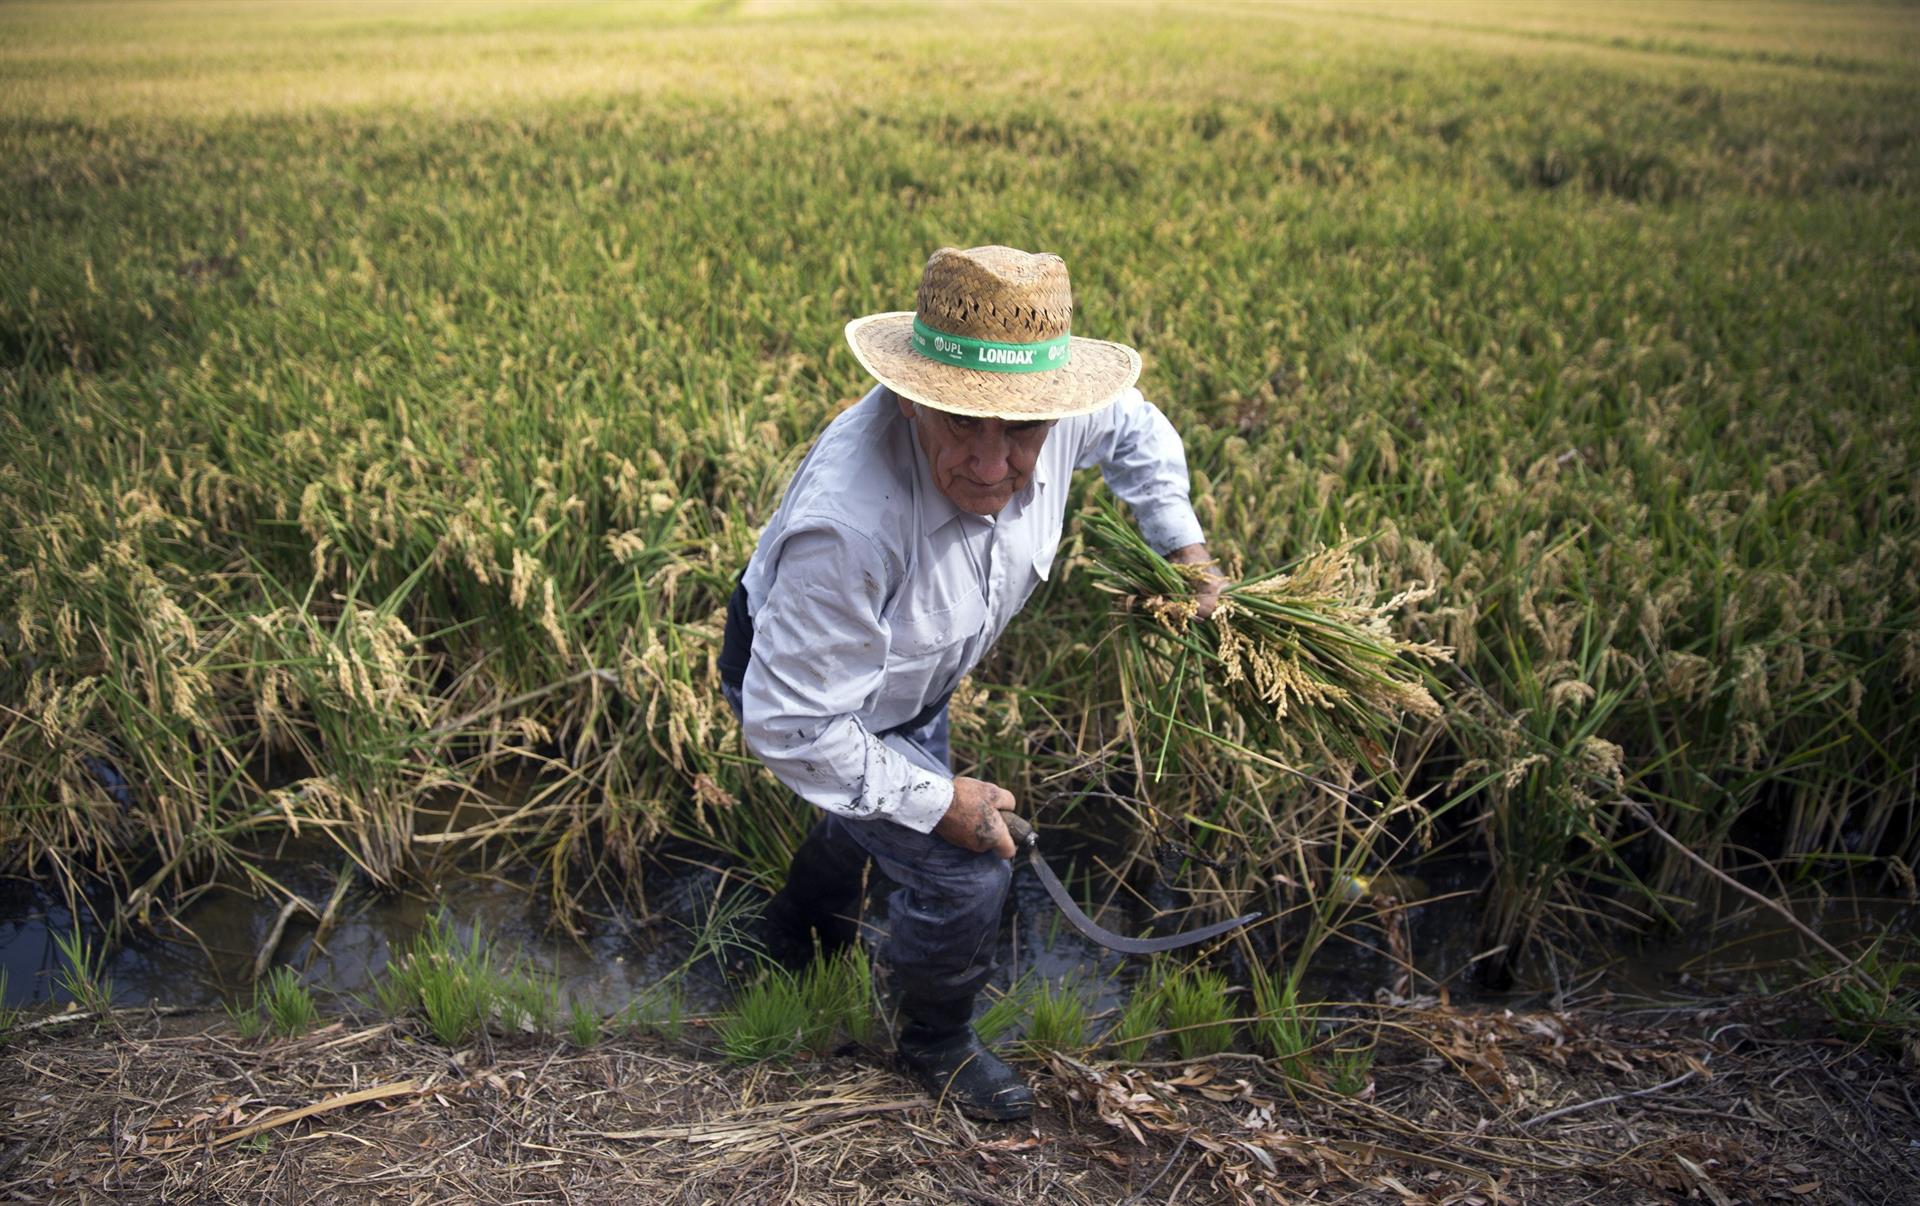 Un segador trabaja en un campo de arroz durante la demostración de siega tradicional propia de la zona de la Albufera durante una anterior edición de la Fiesta de la Siega organizada por la Denominación de Origen Arroz de Valencia. EFE/Kai Försterling